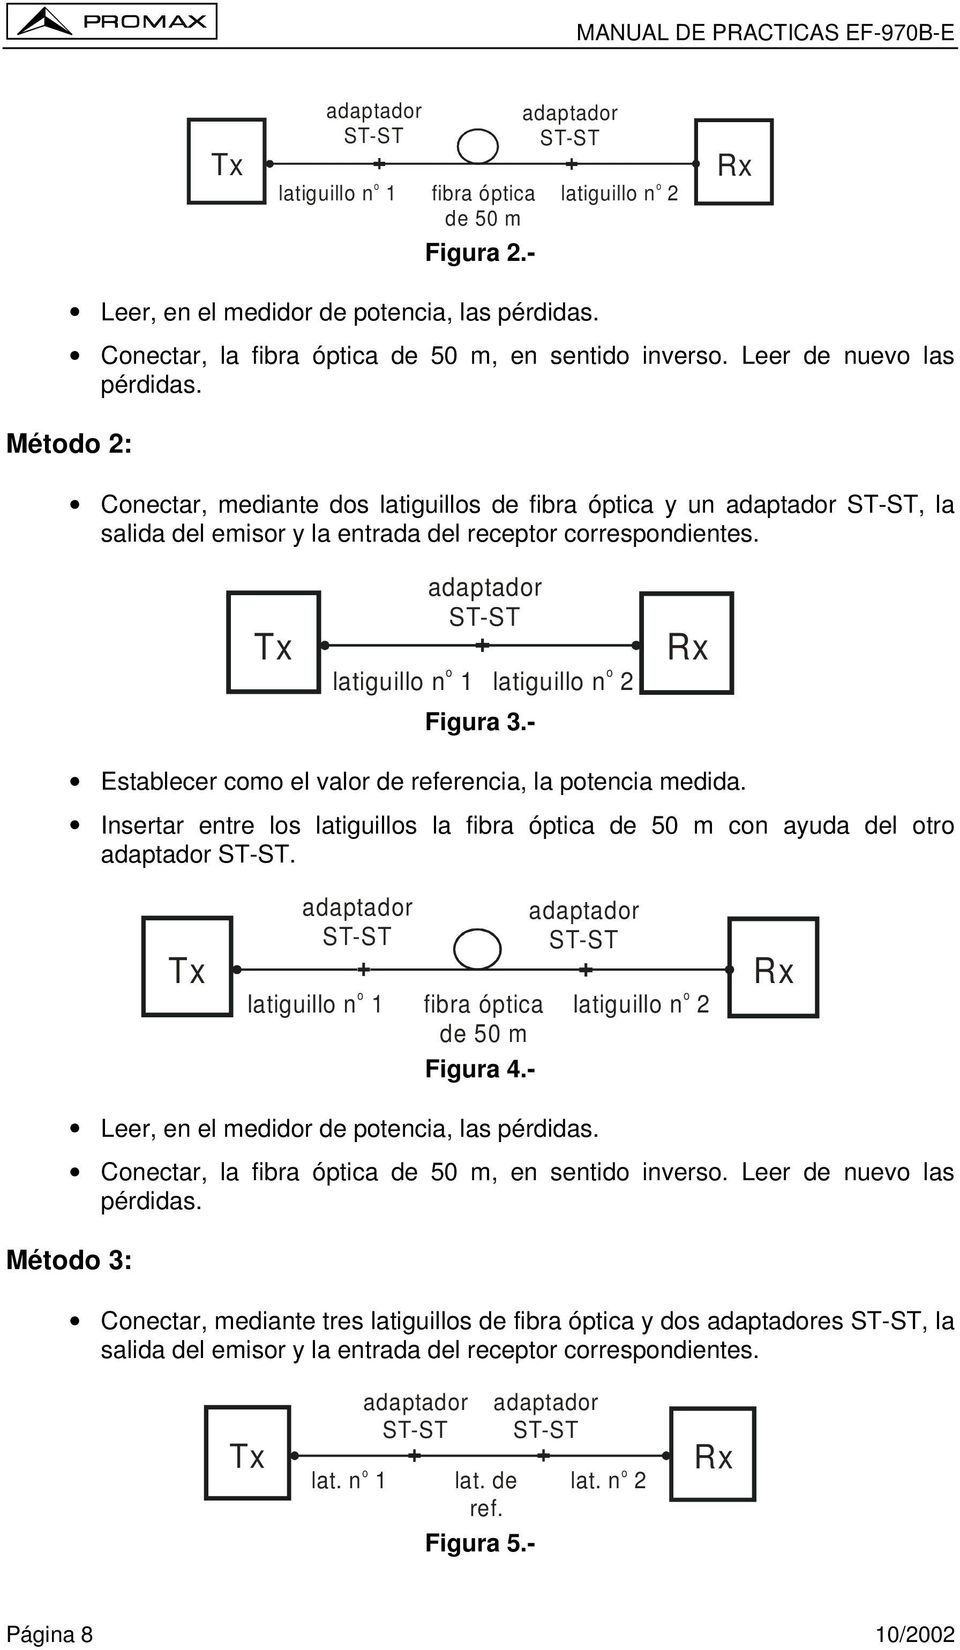 Método 2: Conectar, mediante dos latiguillos de fibra óptica y un adaptador ST-ST, la salida del emisor y la entrada del receptor correspondientes. Tx o latiguillo n 1 adaptador ST-ST Figura 3.